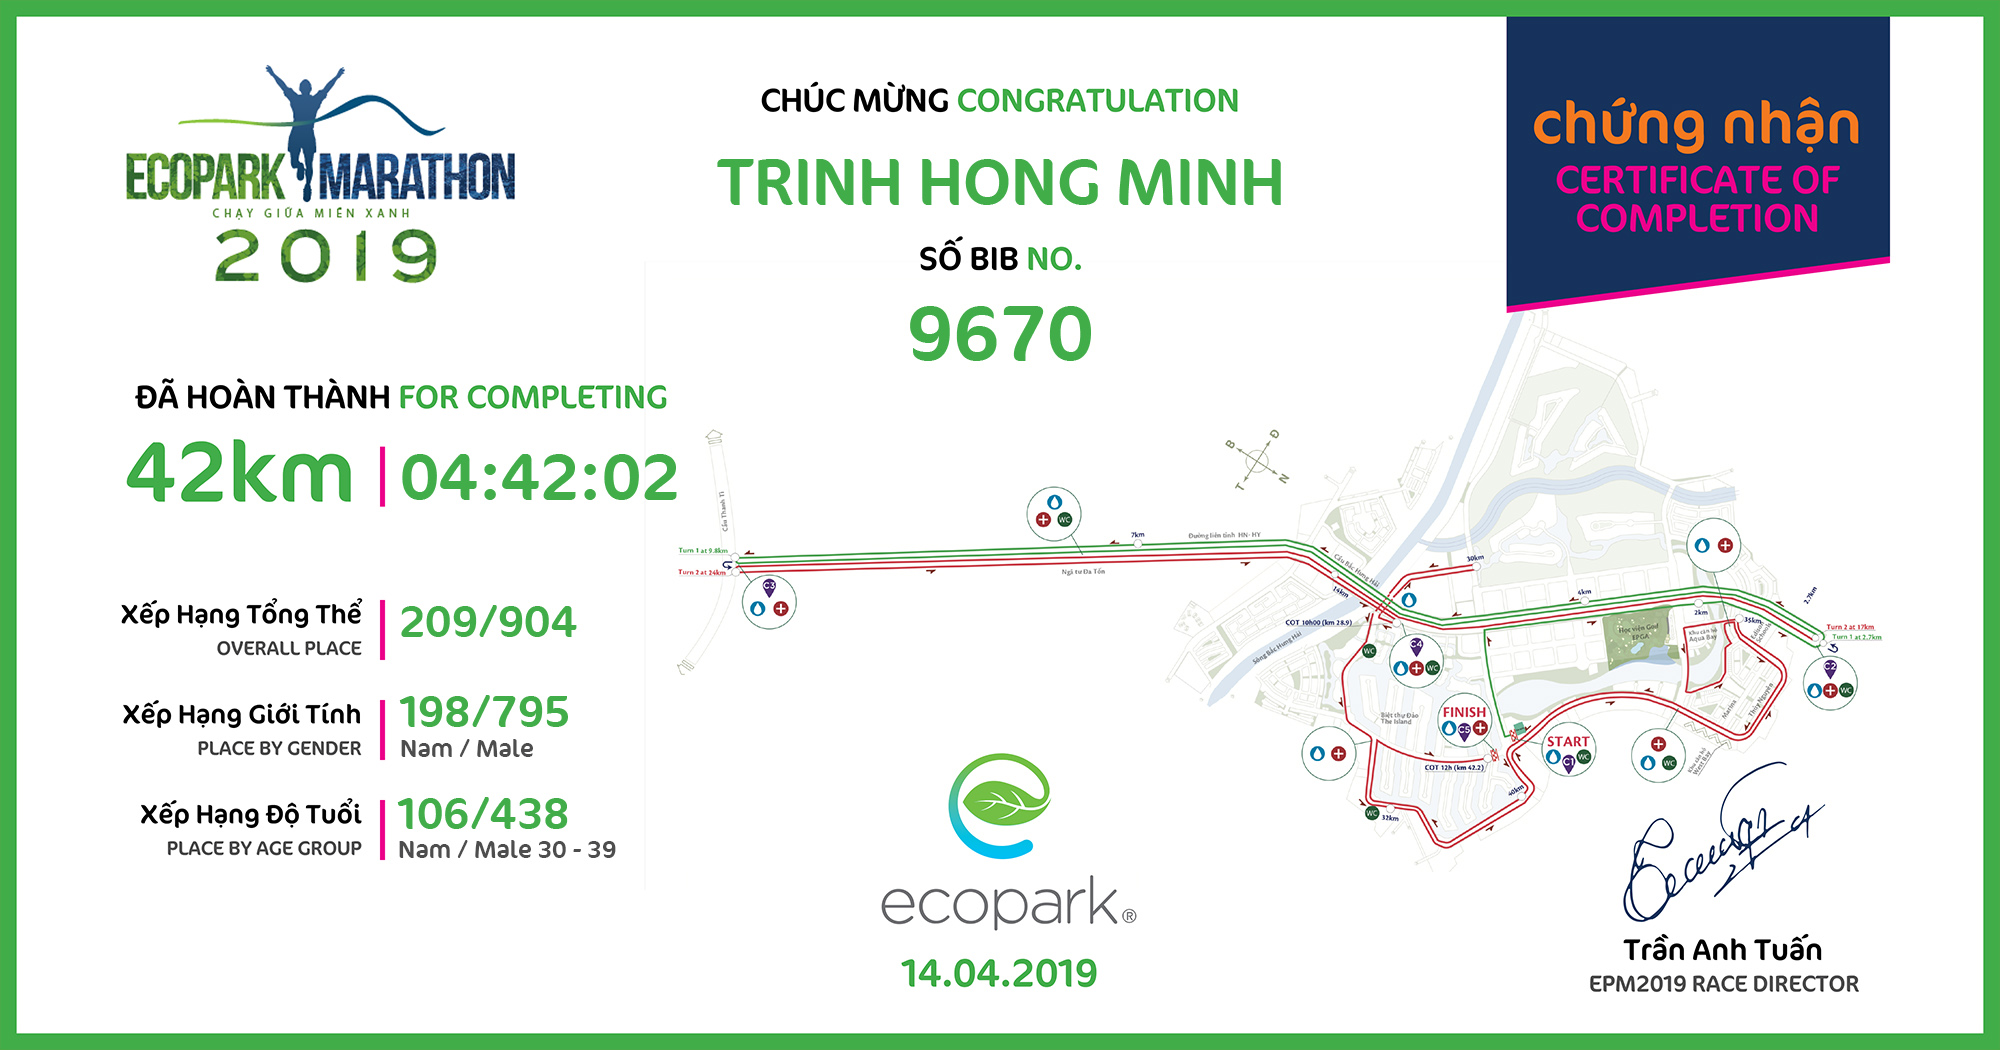 9670 - Trinh Hong Minh